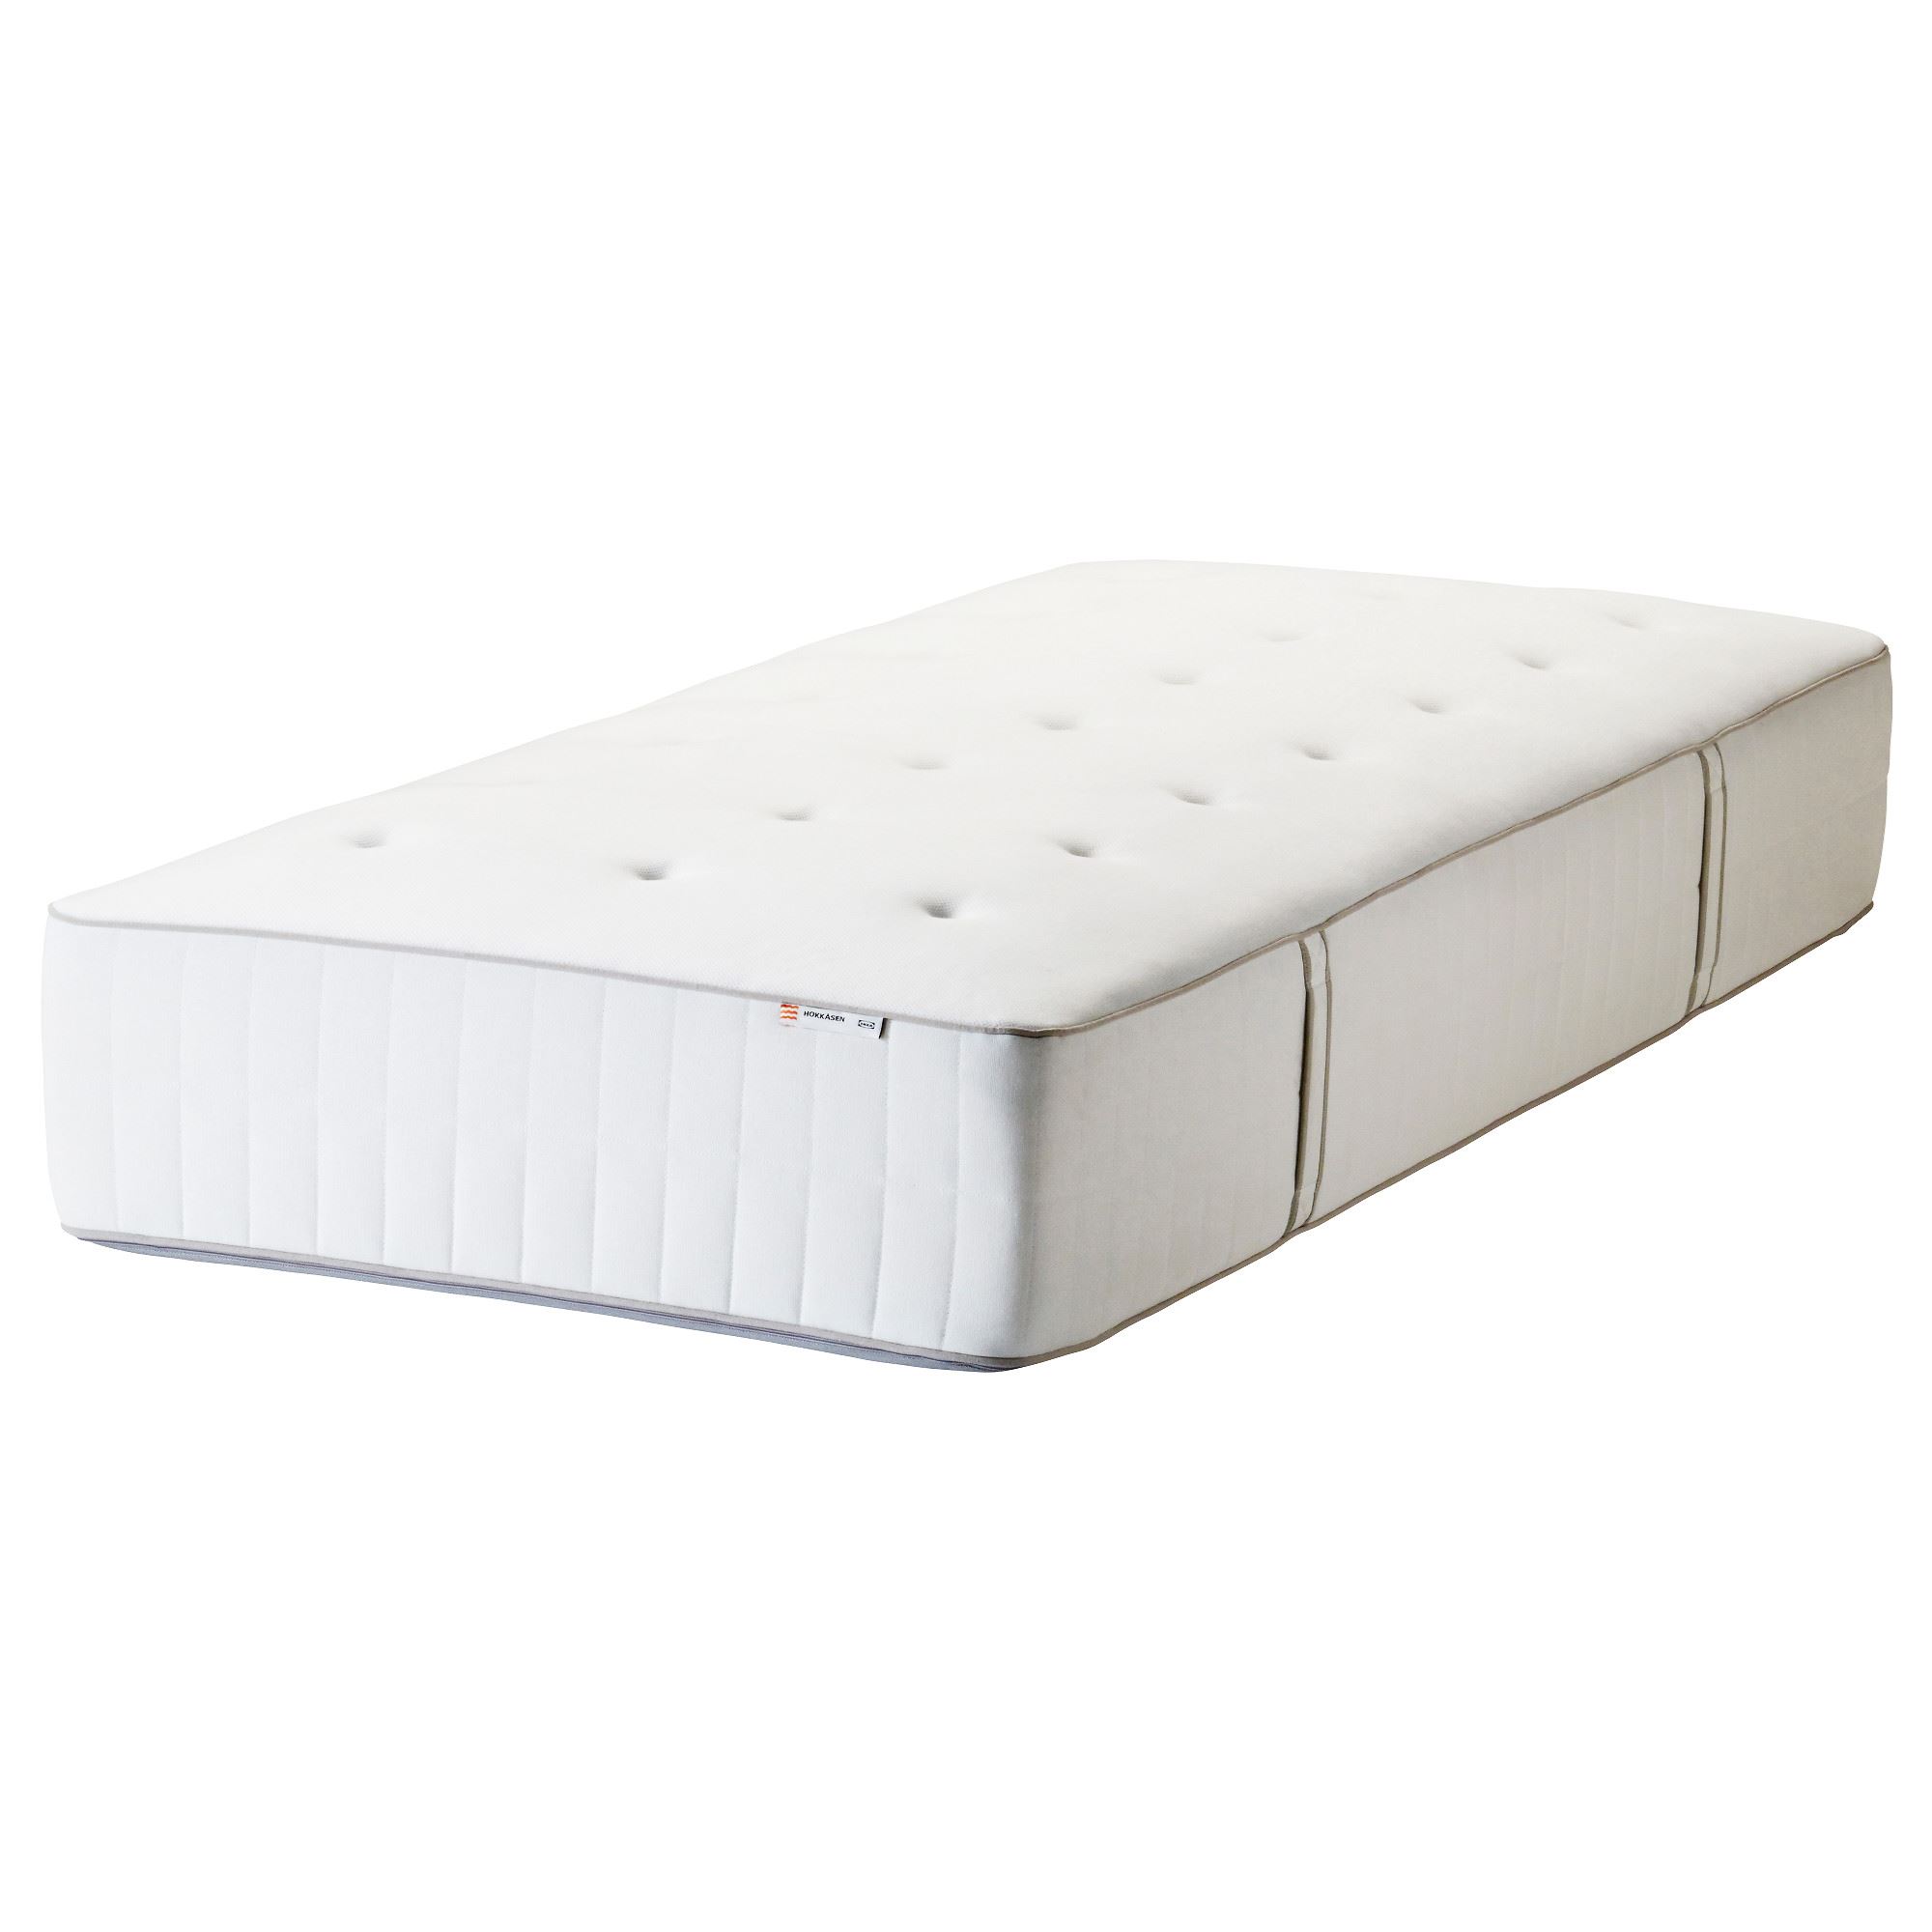 HOKKASEN tek kişilik yatak beyazorta sert 90x200 cm IKEA Yatak Odaları